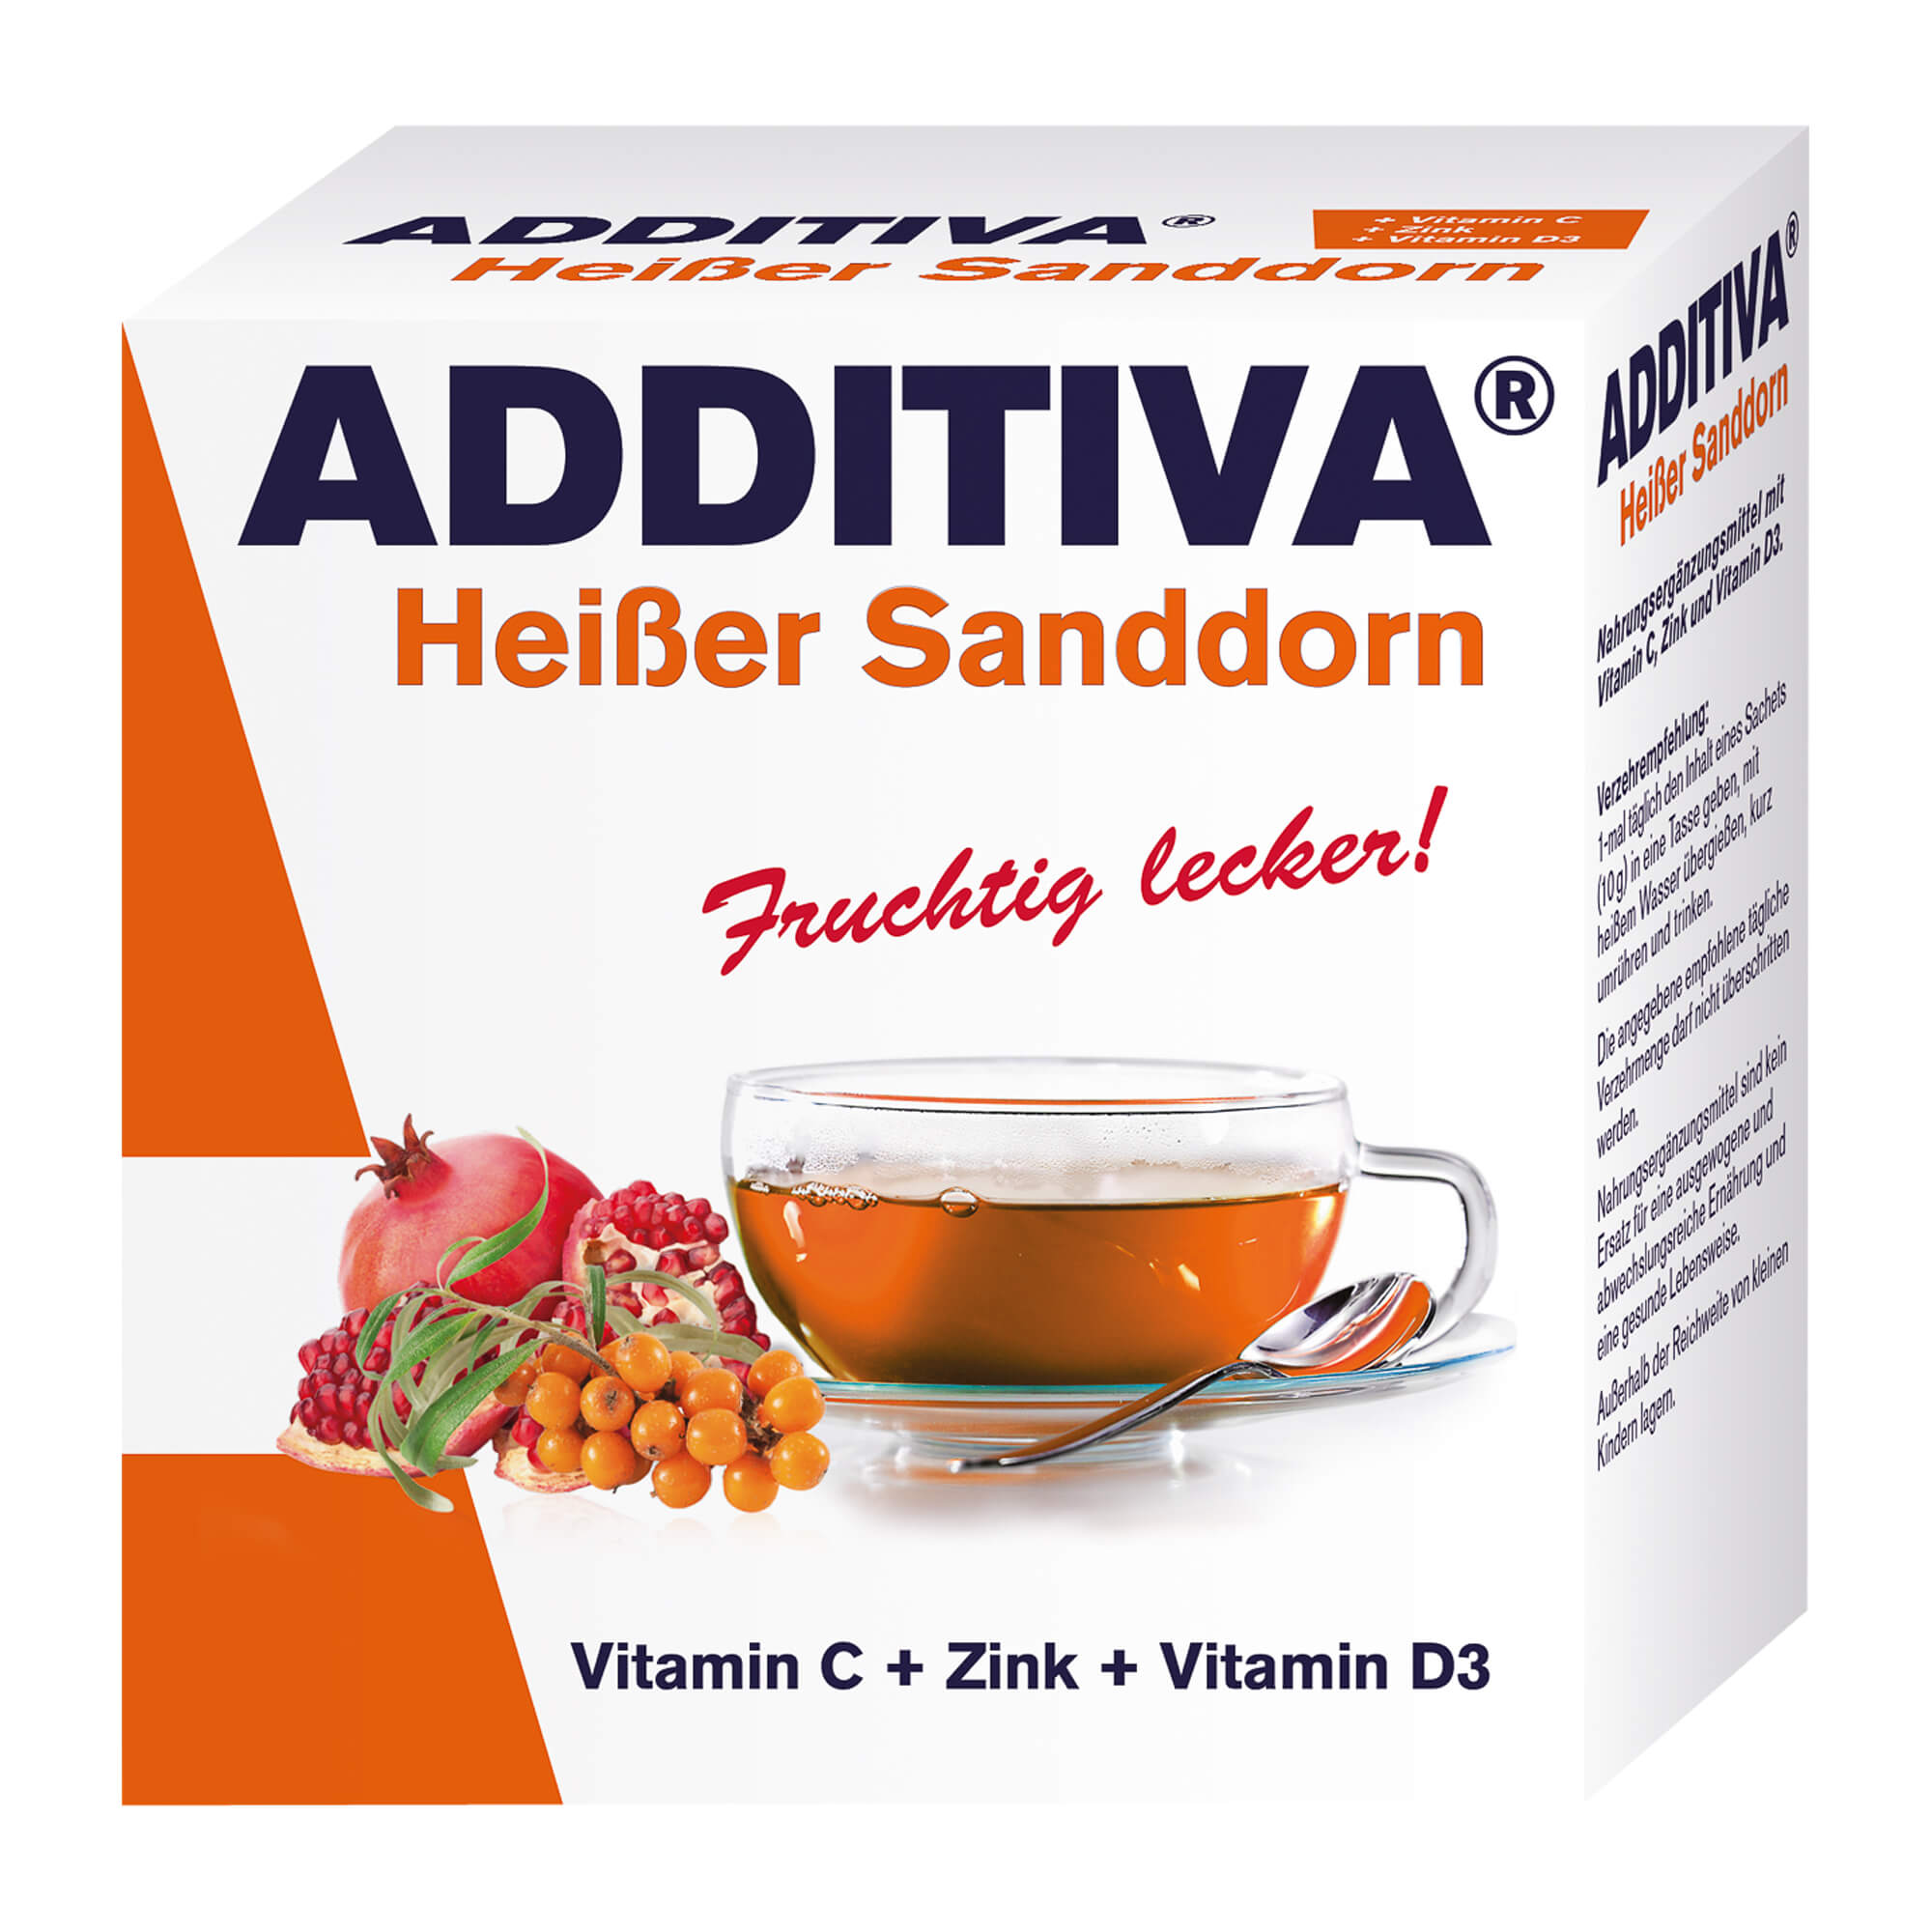 Nahrungsergänzungsmittel mit Vitamin C, Zink und Vitamin D3. Mit Sanddorn-Geschmack.